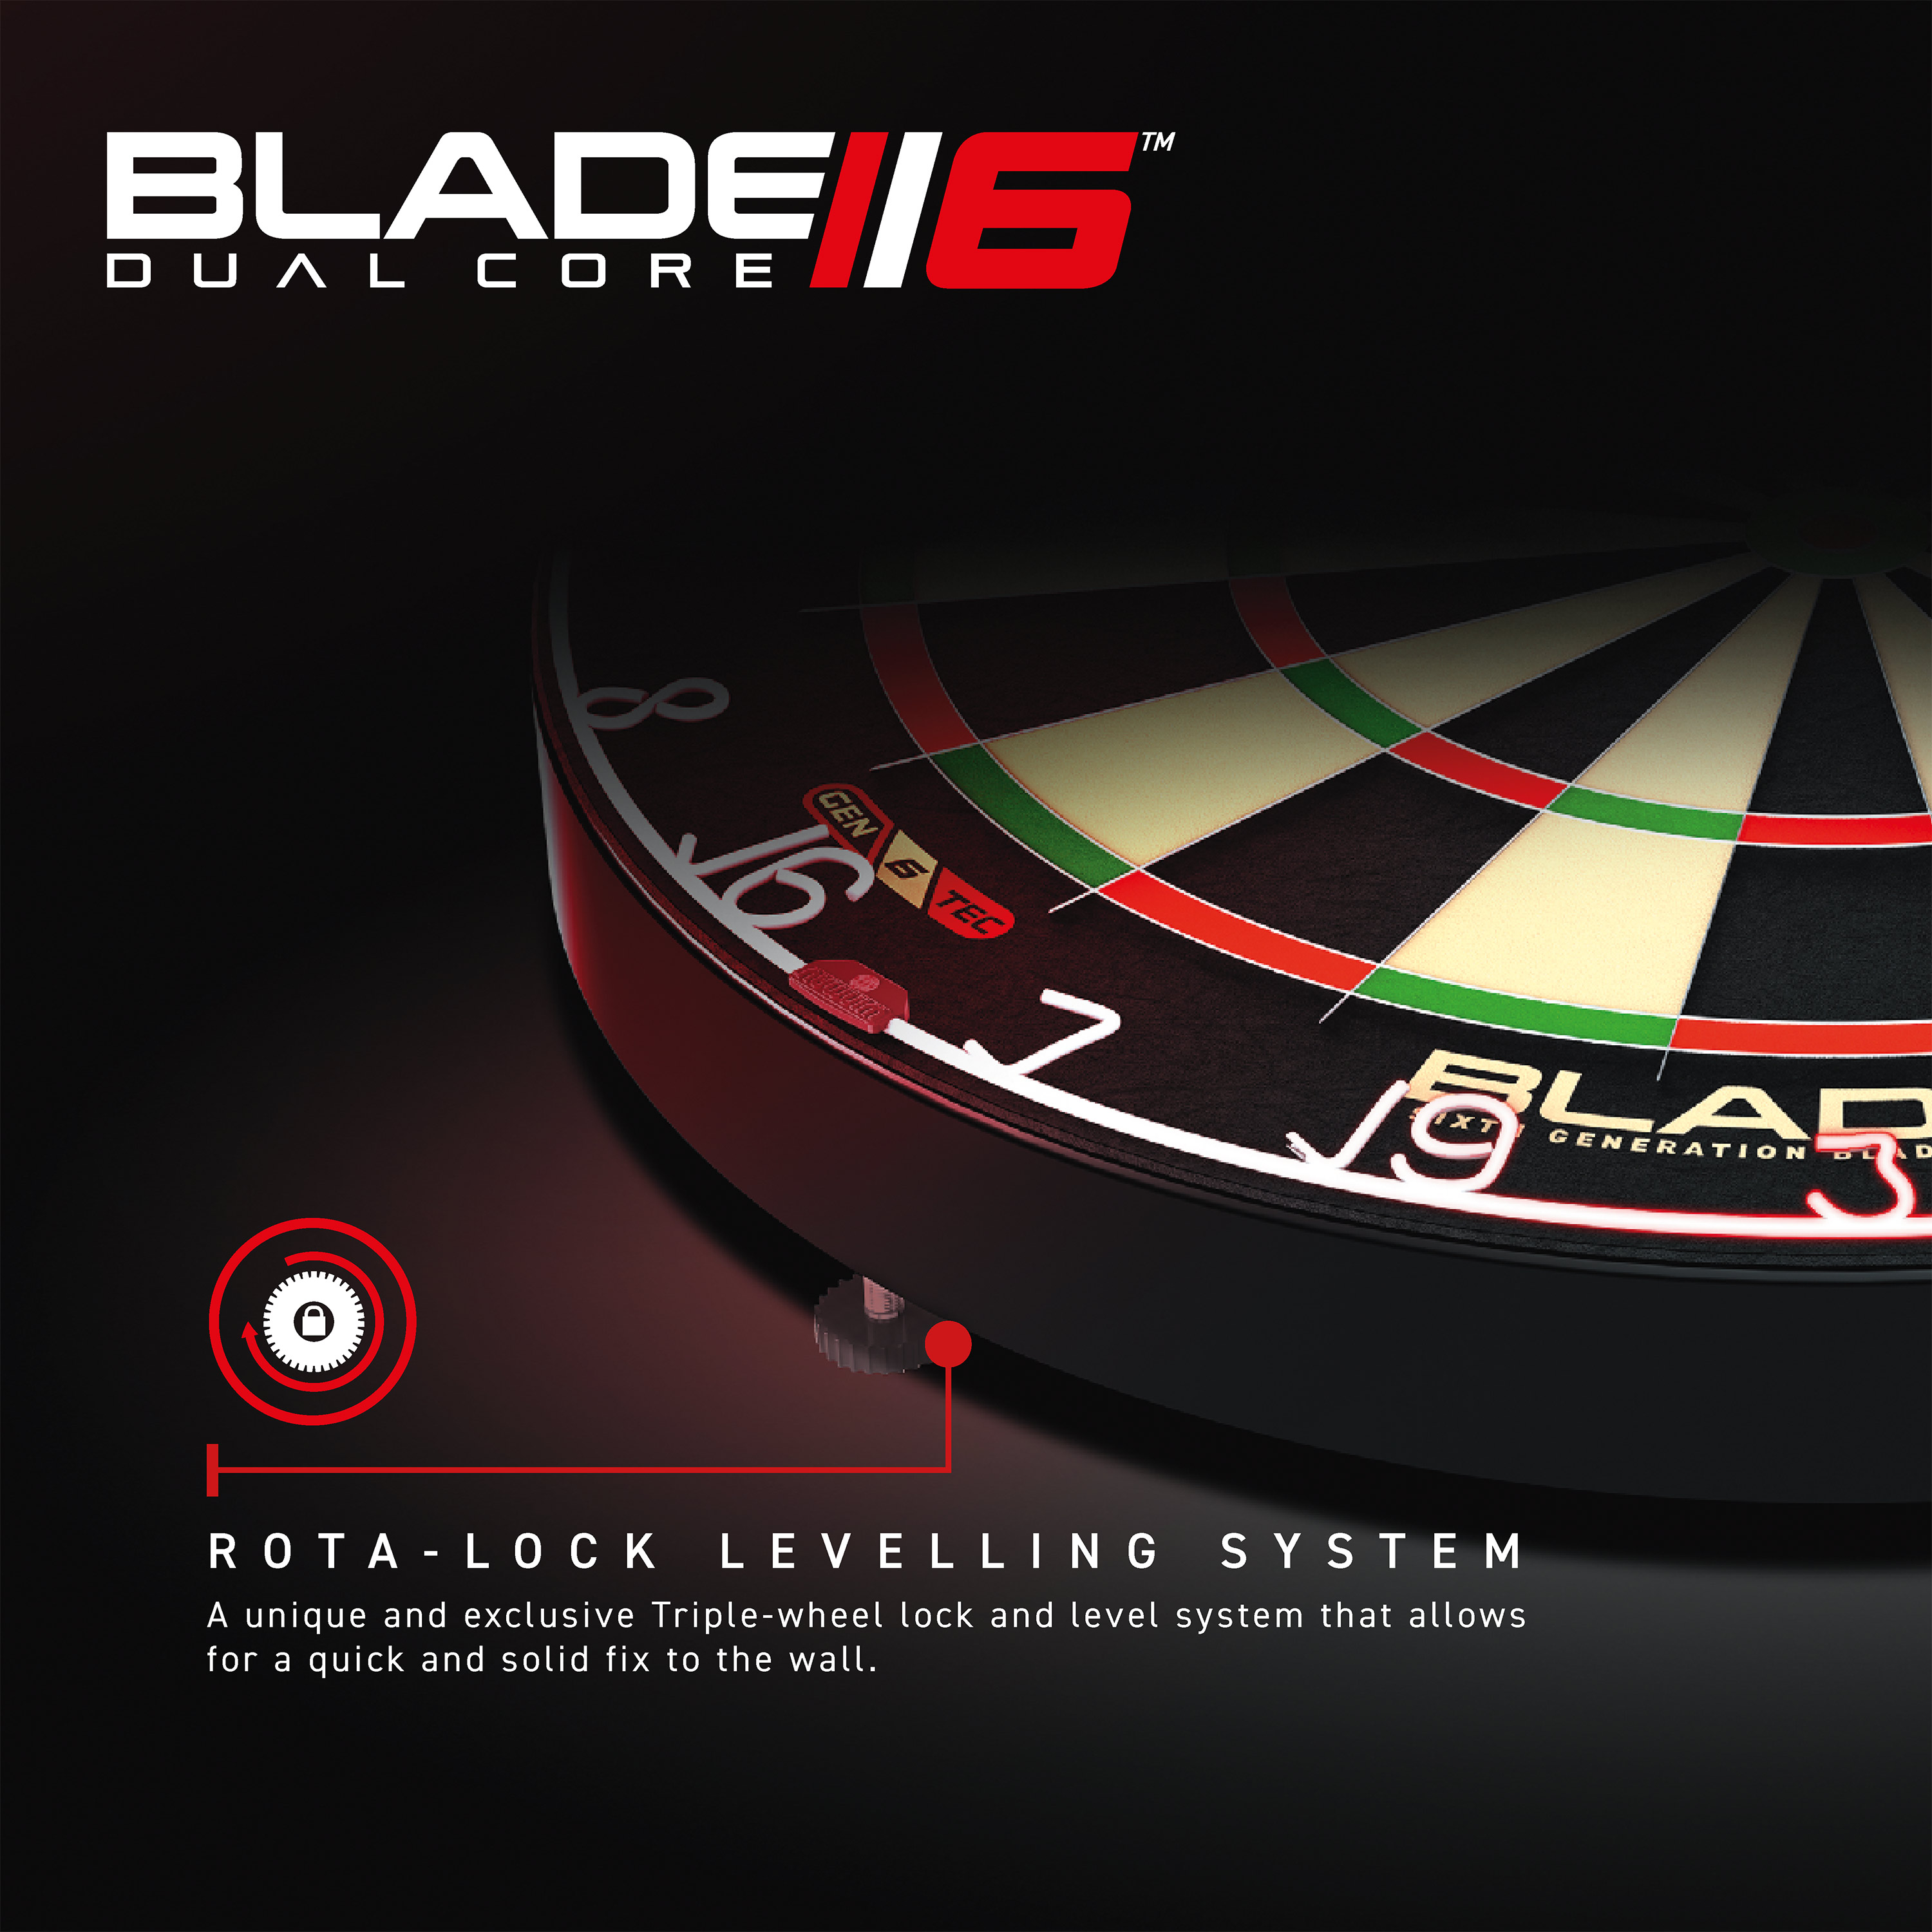 Dartboard WINMAU Blade 6 Dual Core - 3031